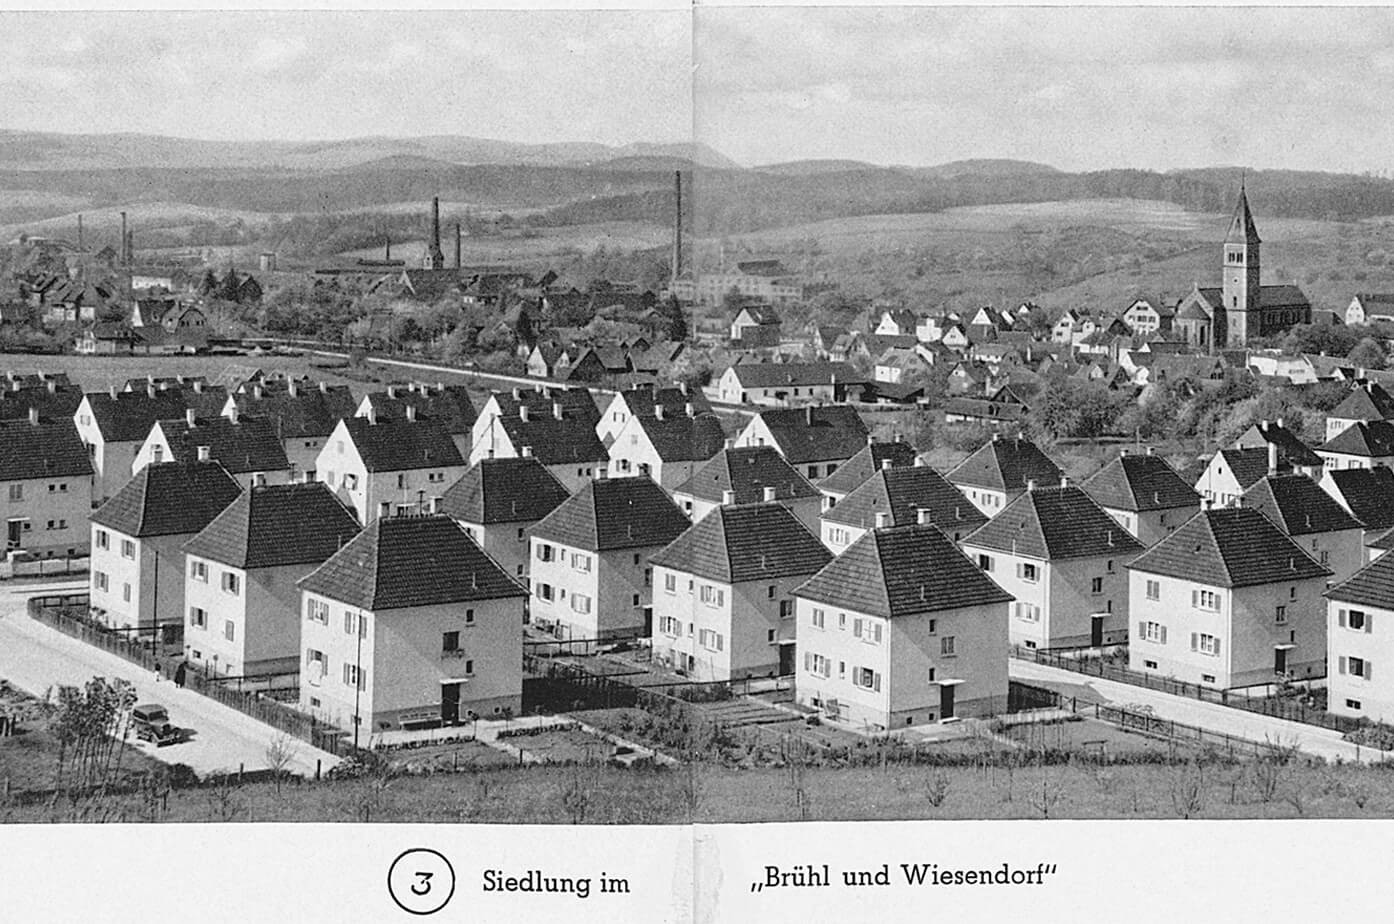 1930s: Houses for Alfing employees in Wasseralfingen